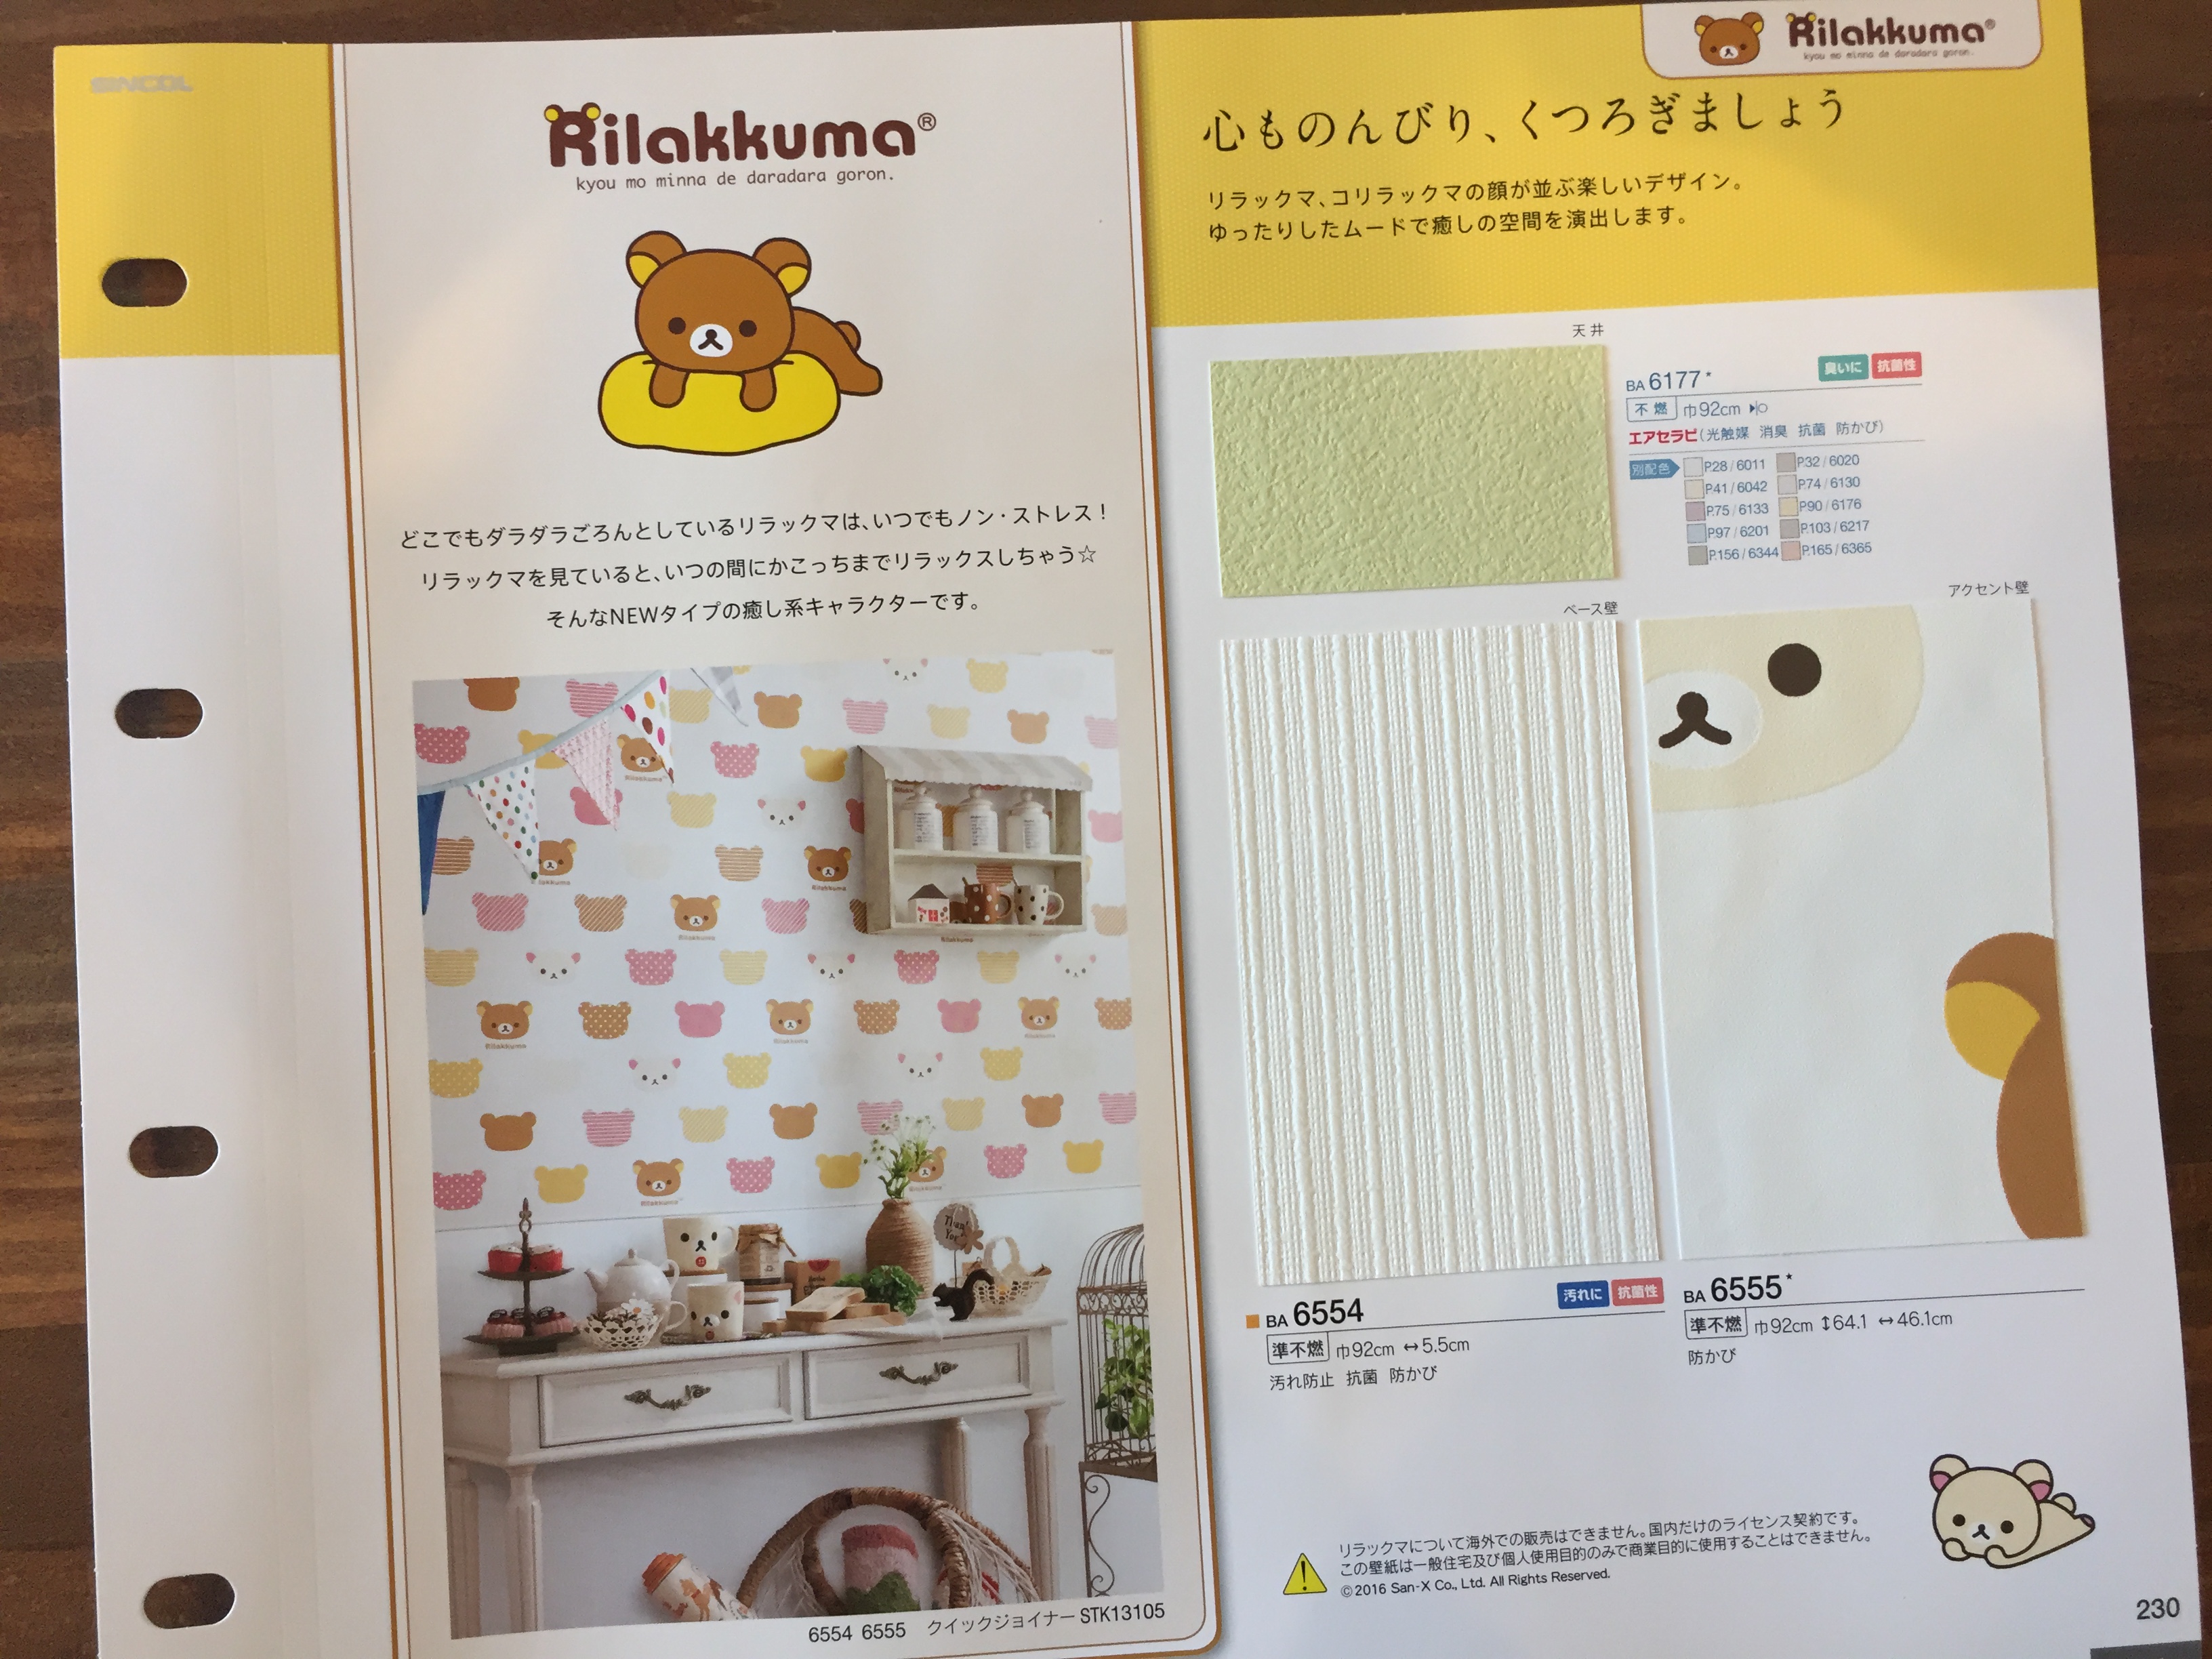 インスタ映えする壁紙 注文住宅の新築 一戸建てならおまかせを 札幌市の工務店 カネトシ工務店のブログ